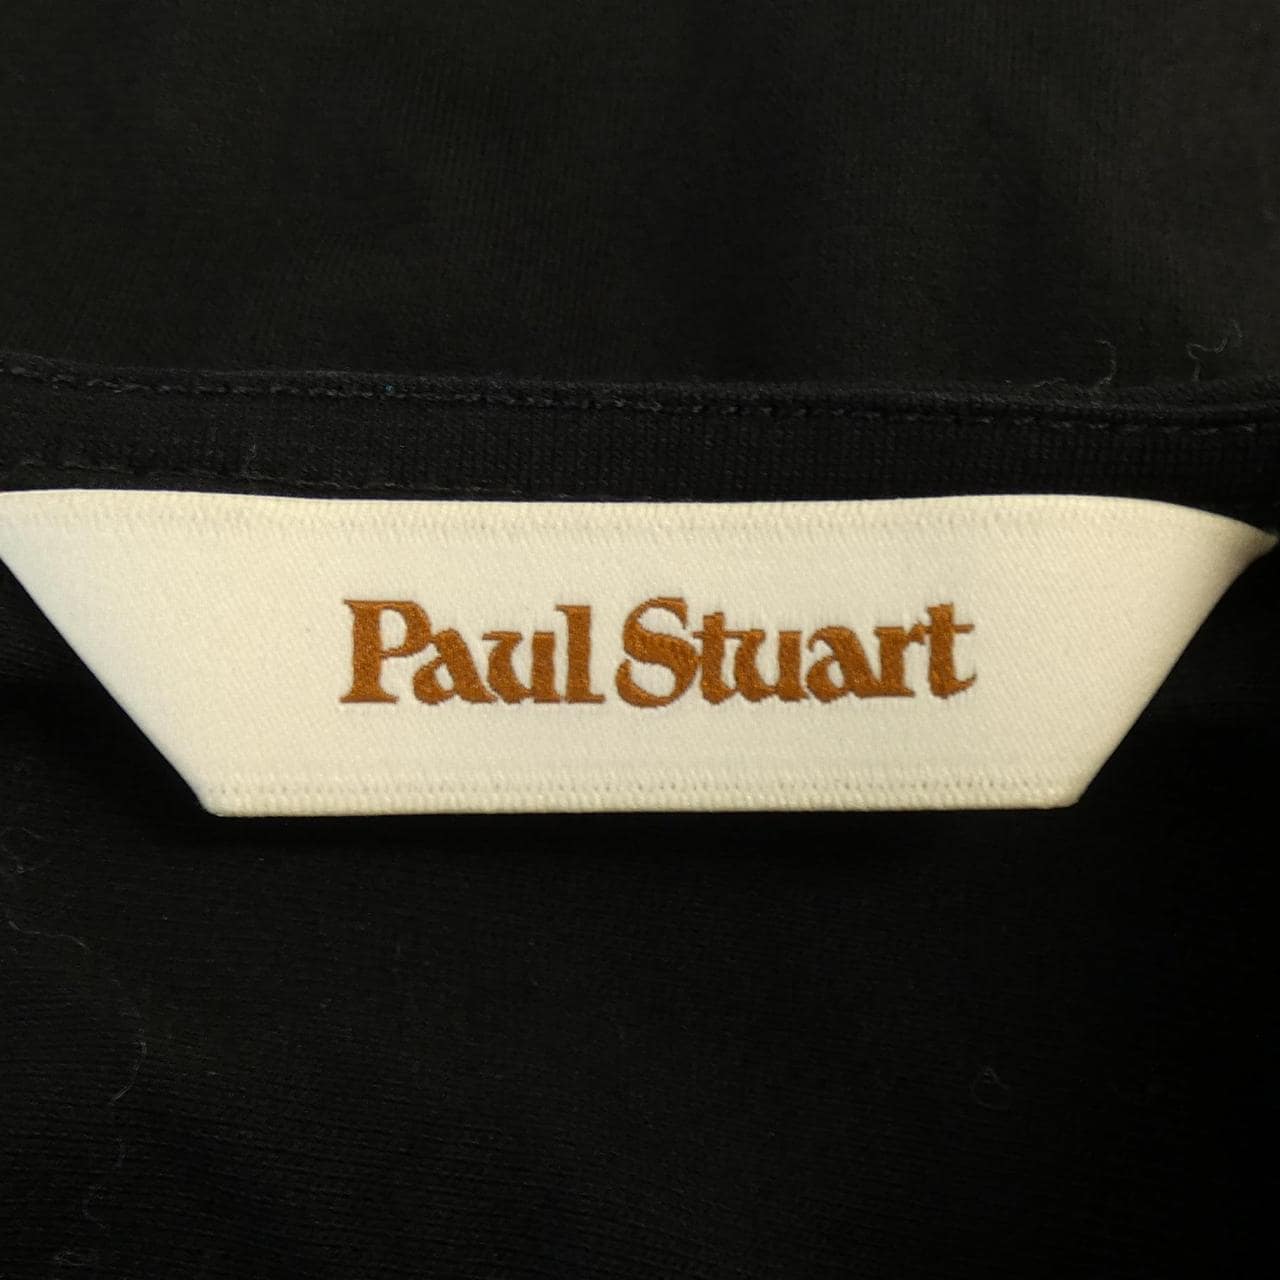 Paul Stuart PAUL STUART tops